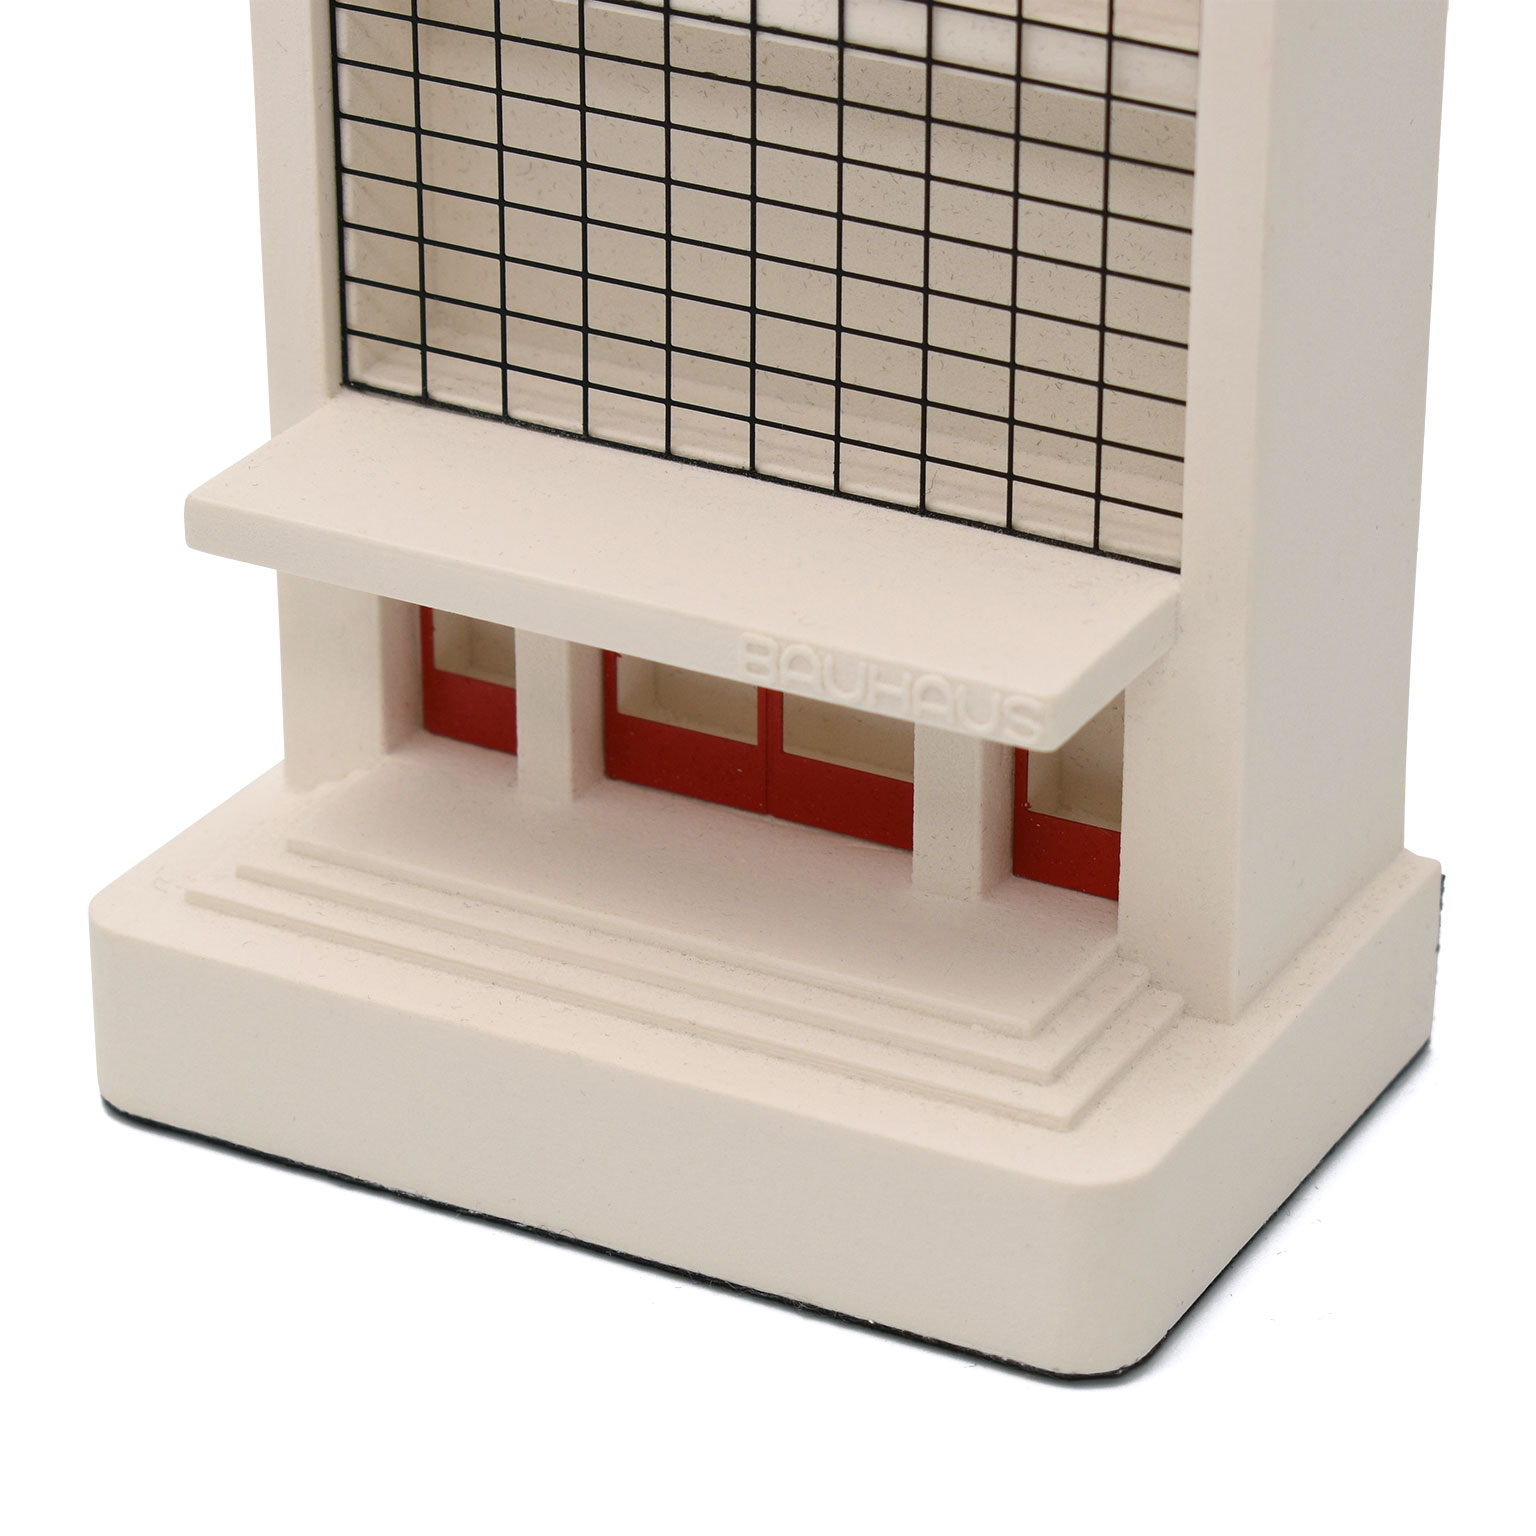 Bauhaus Dessau Mini  建築ミニチュアモデル